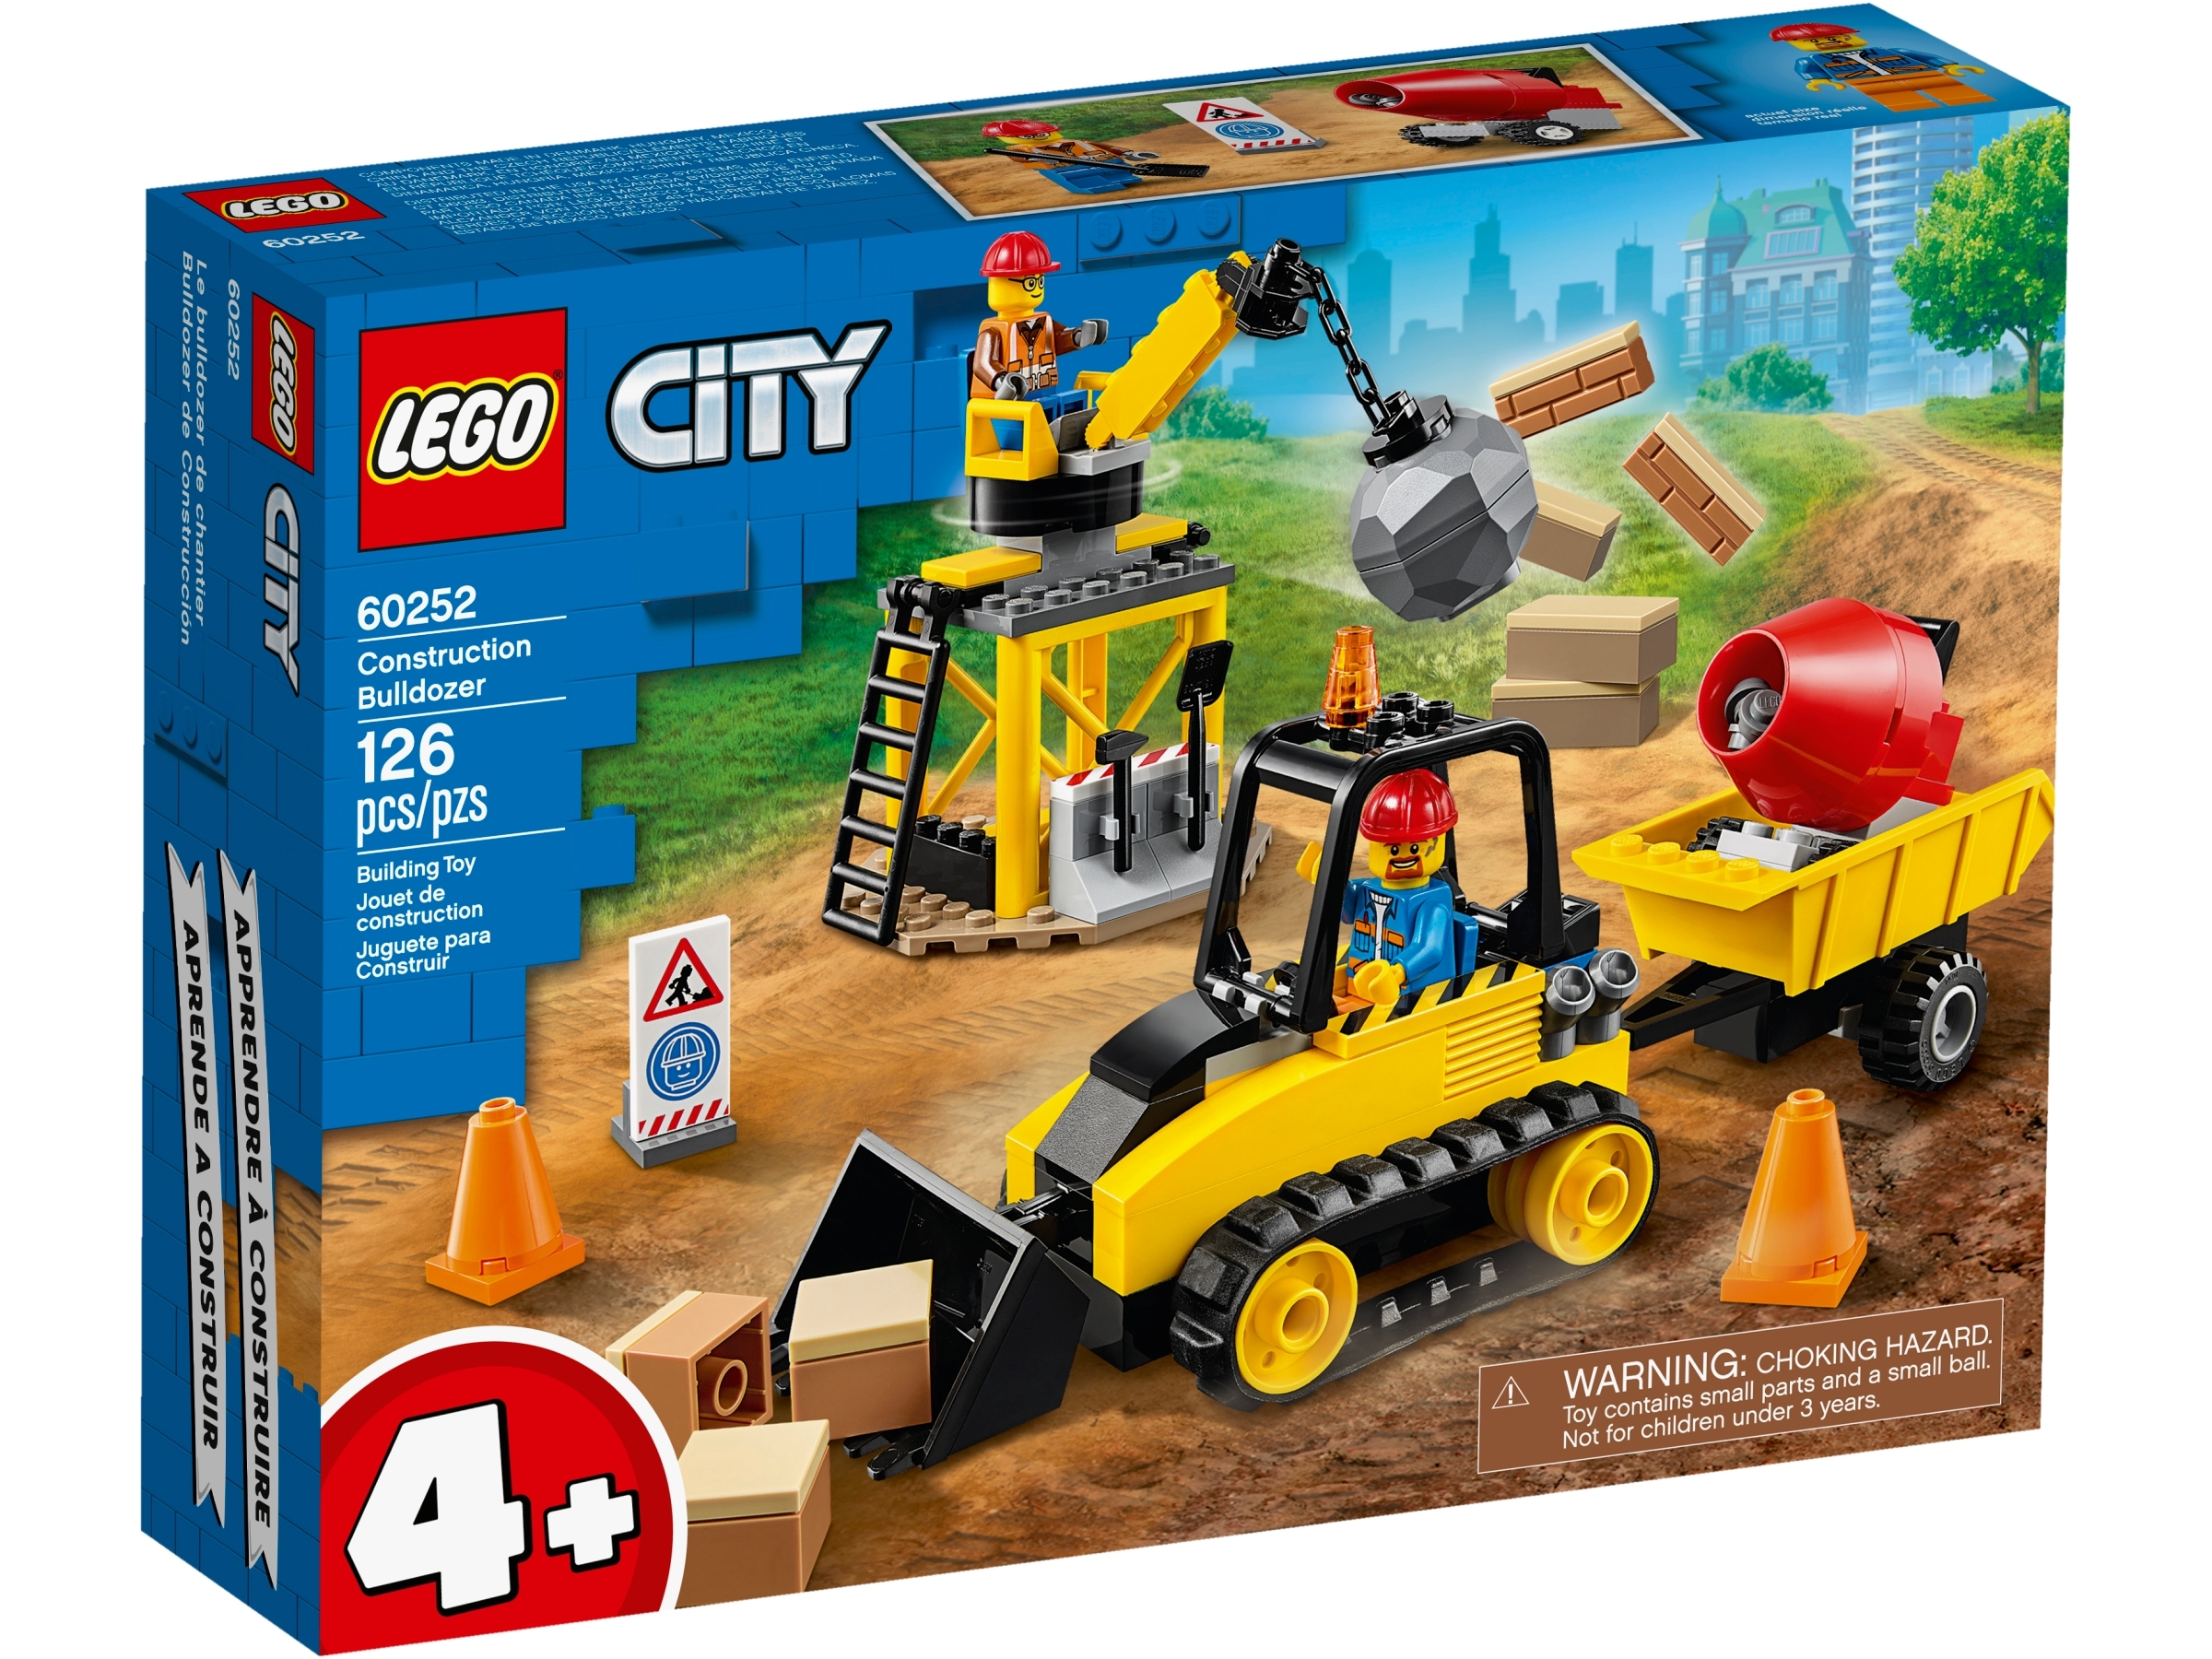 construction site toy set